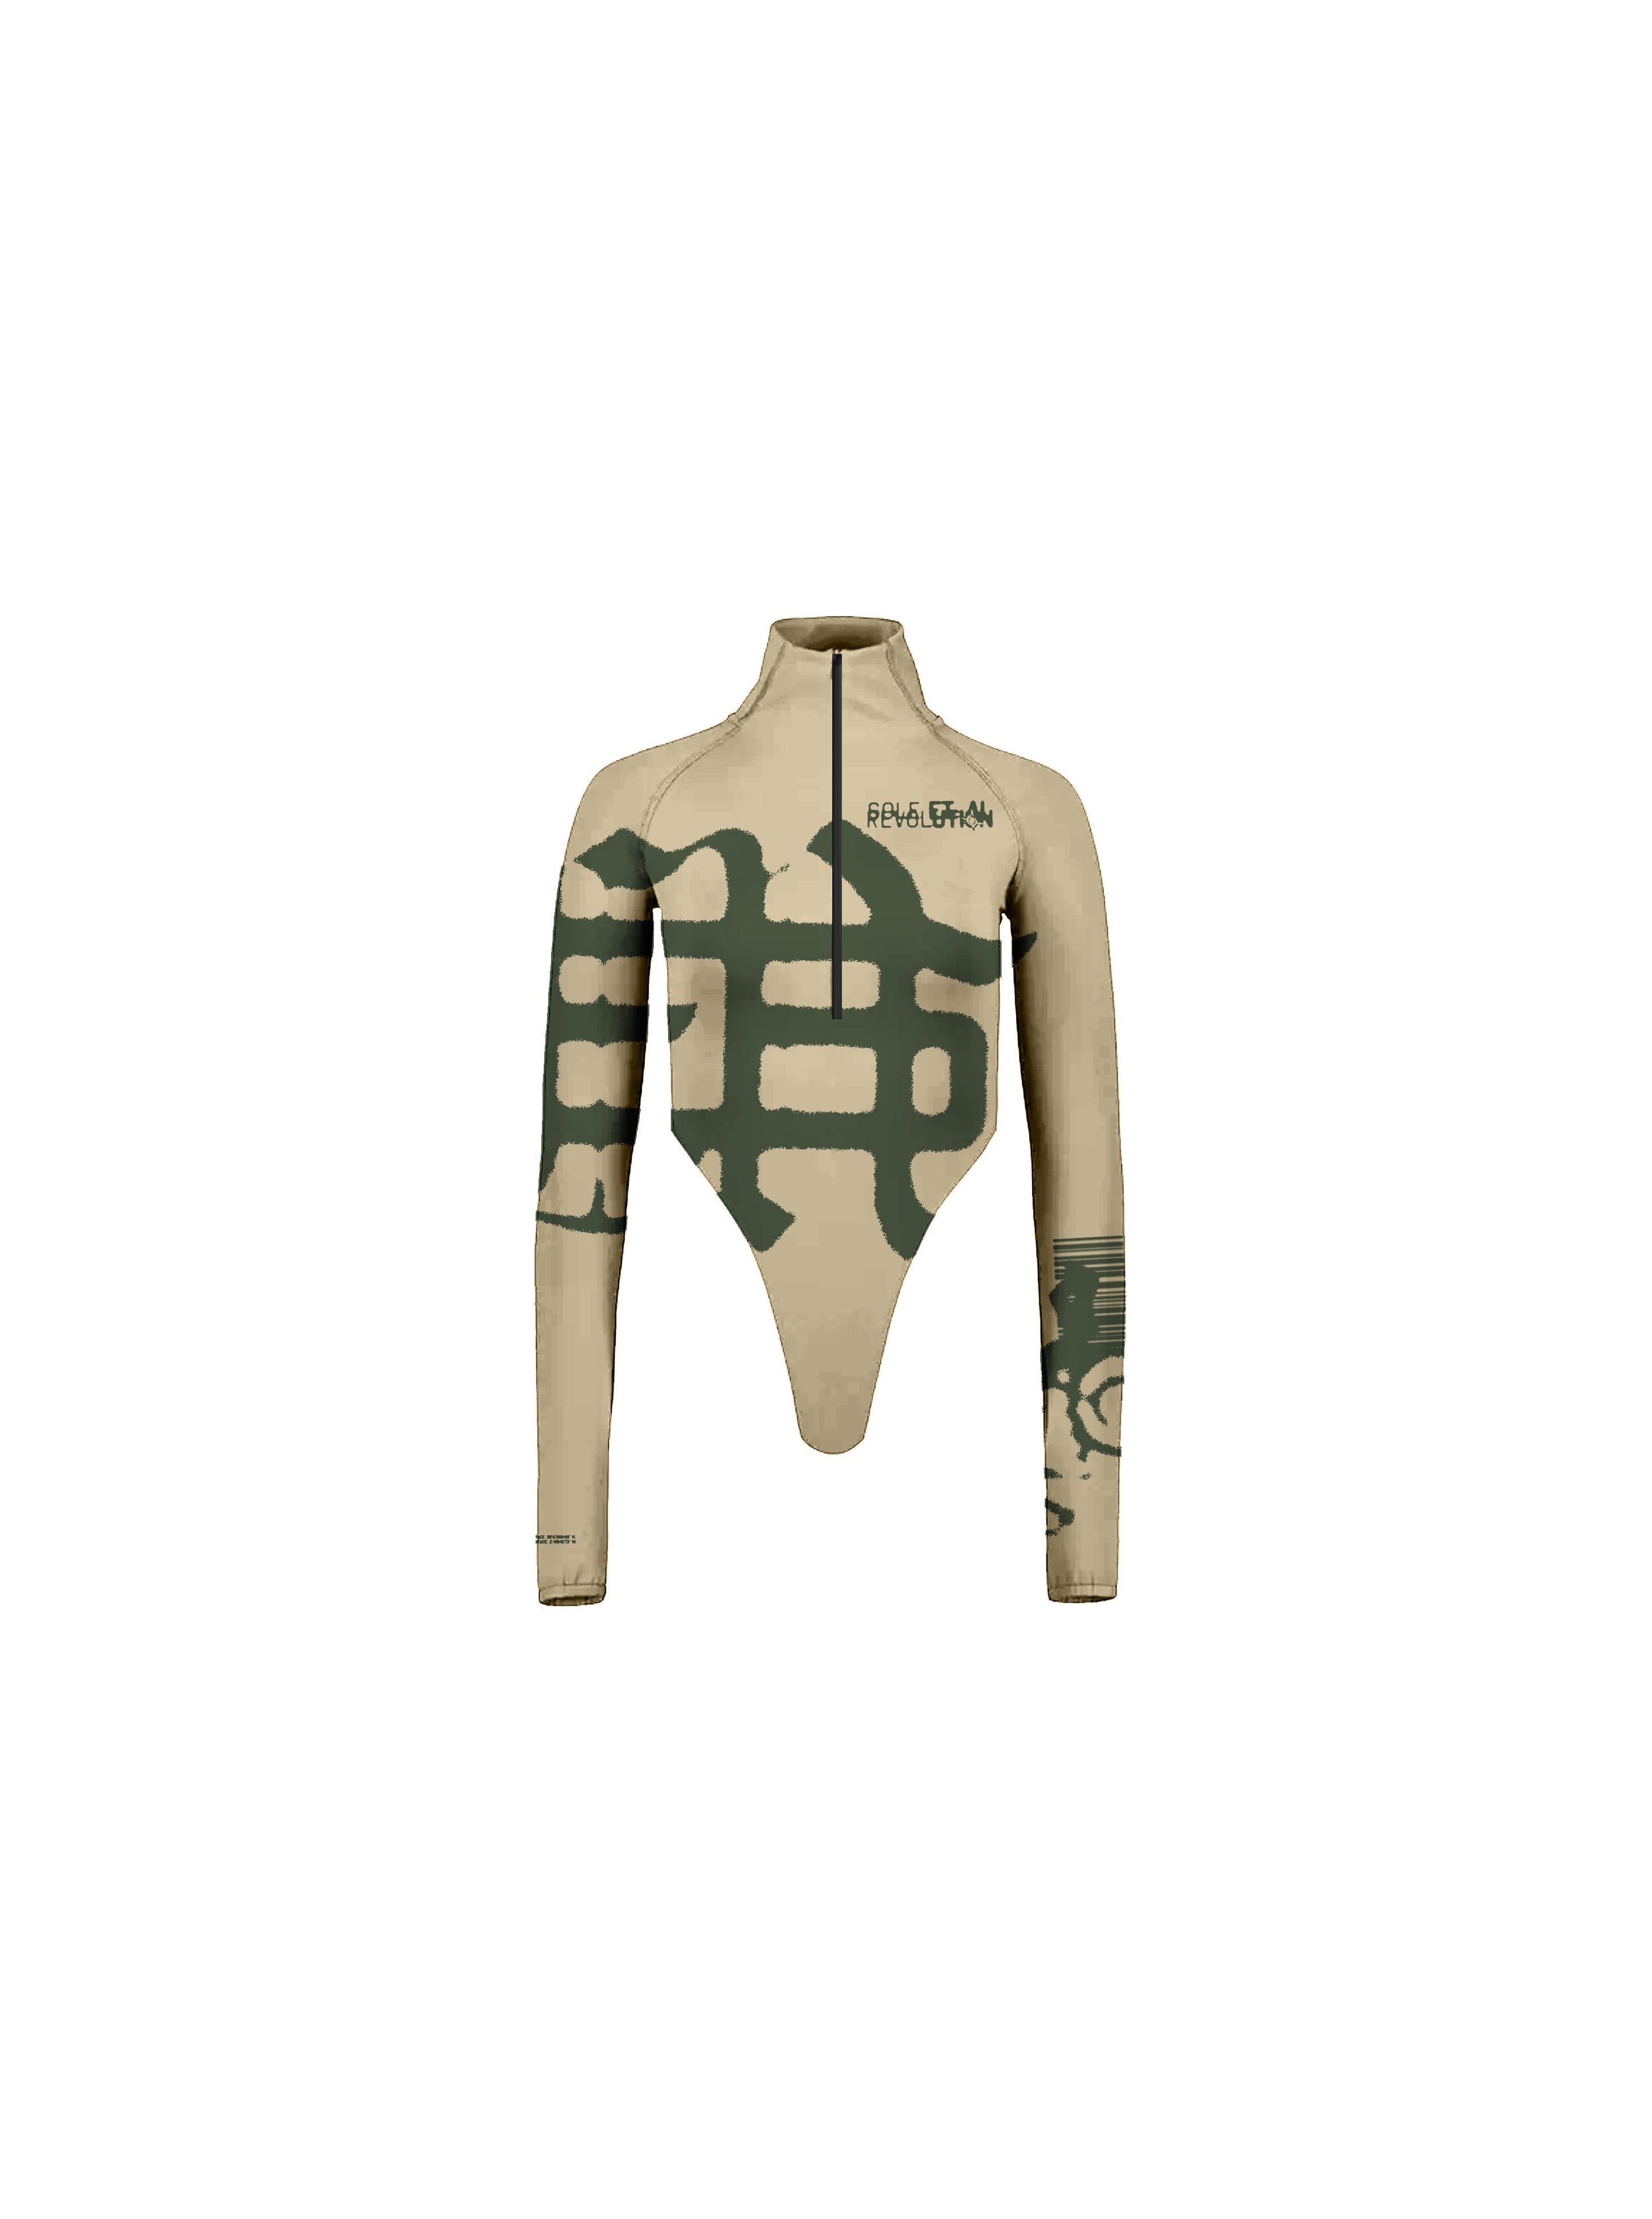 Sole et. Al Revølutiøn Bodysuit med dragkedja : Sand / Militärgrön